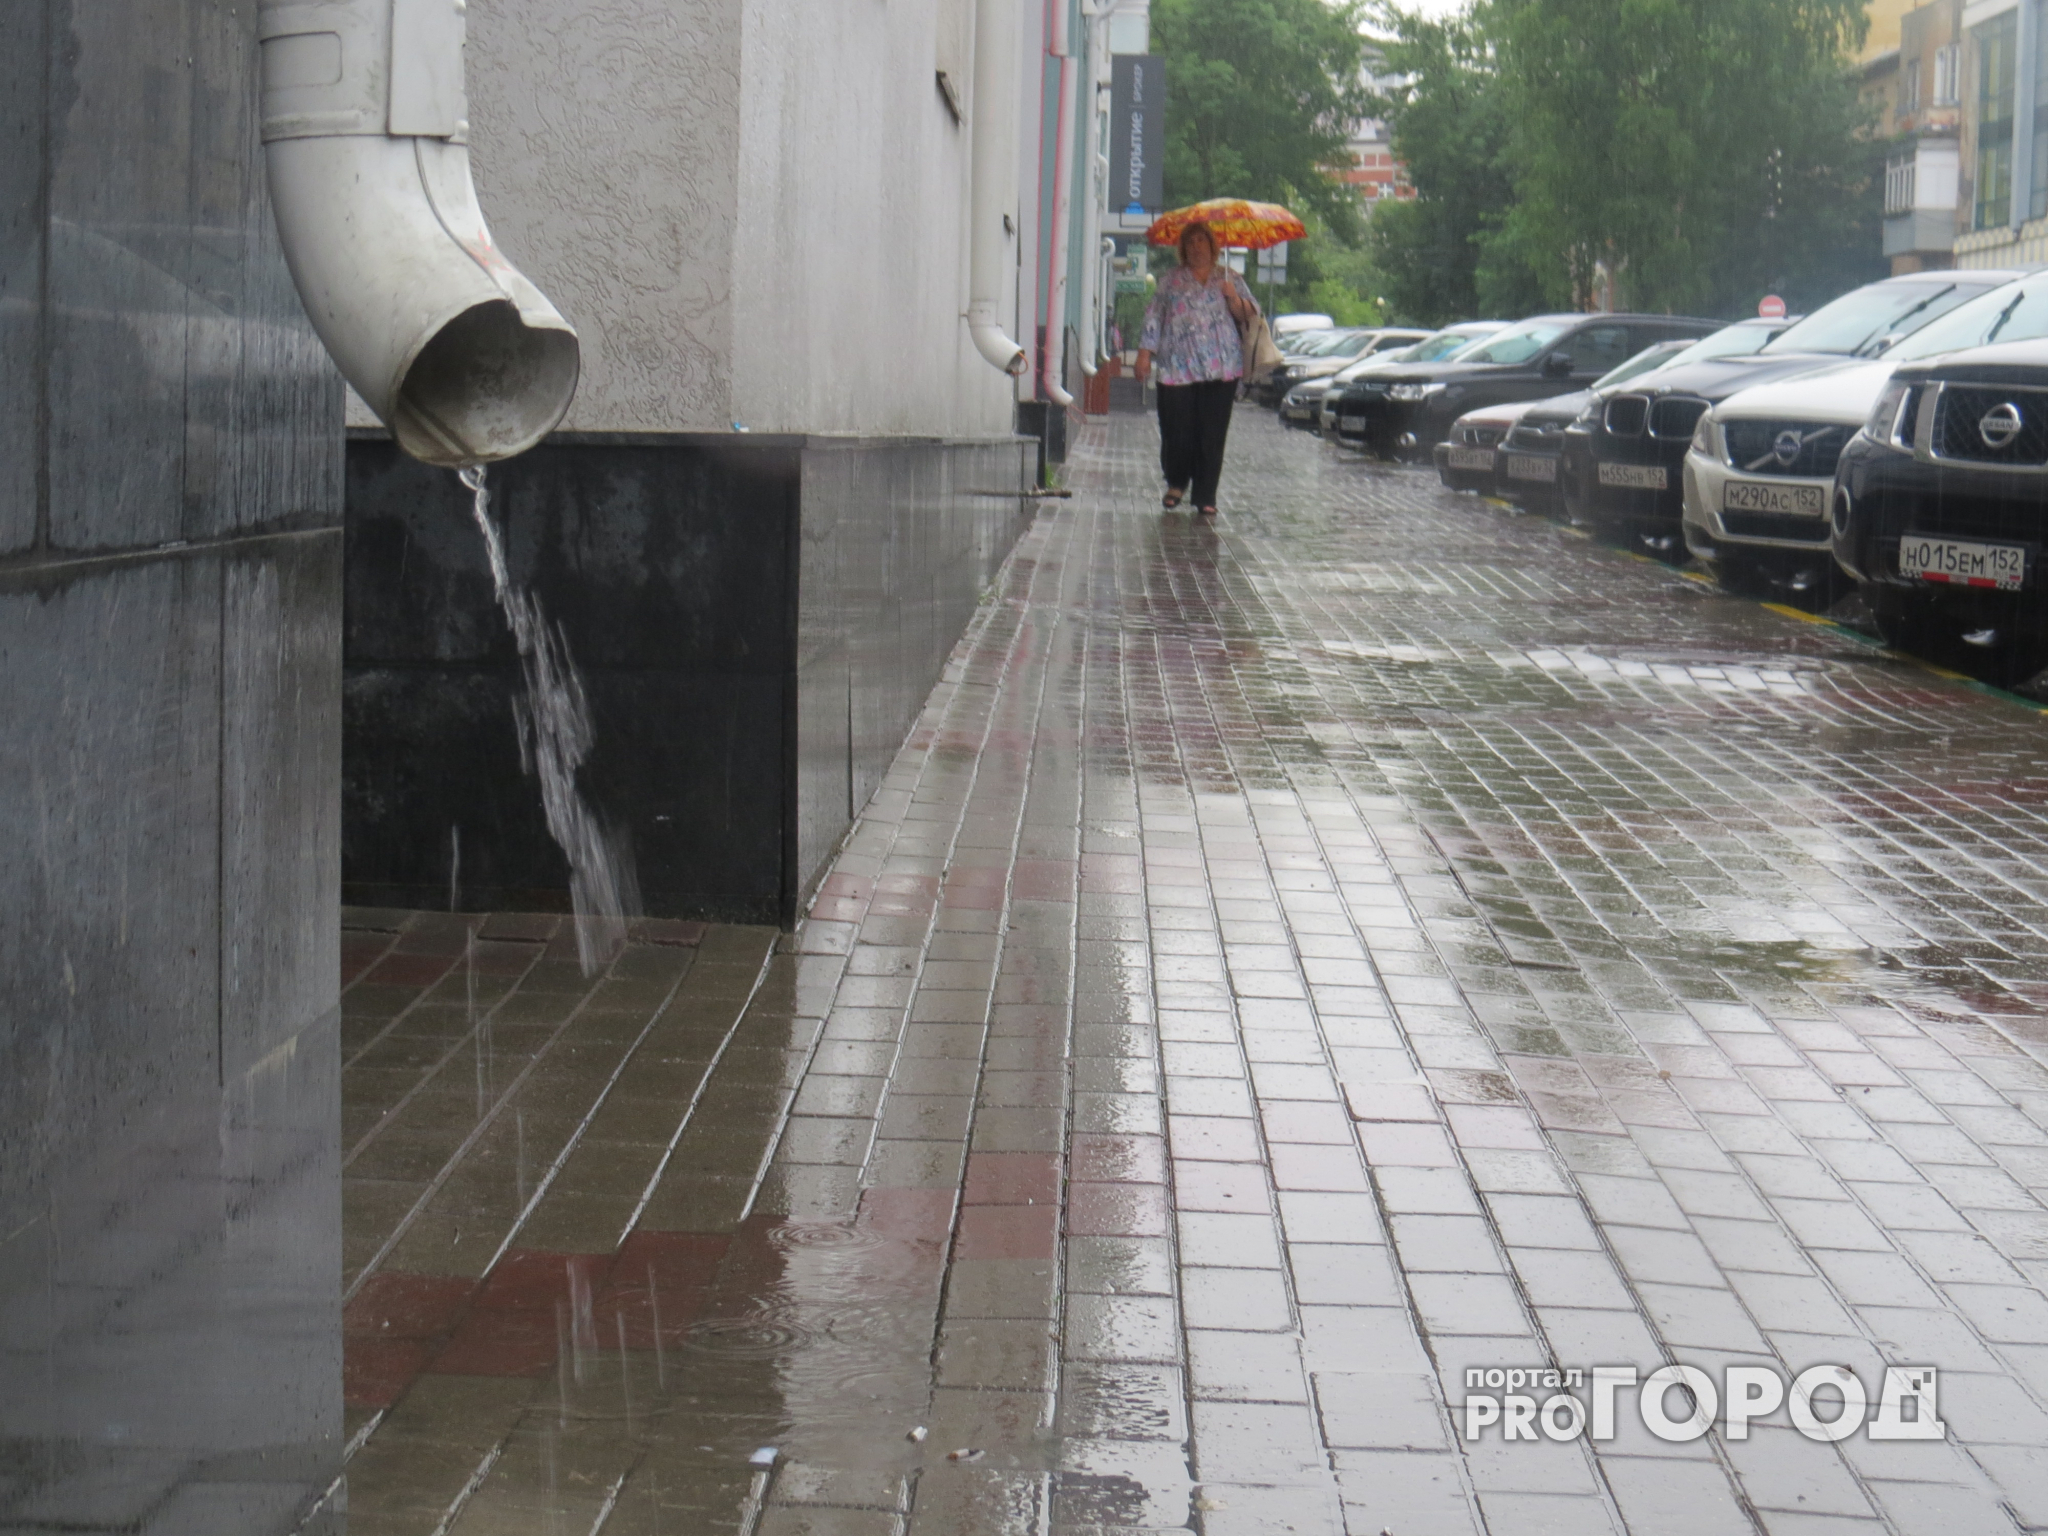 Прогноз погоды: предстоящая рабочая неделя в Чепецке будет дождливой